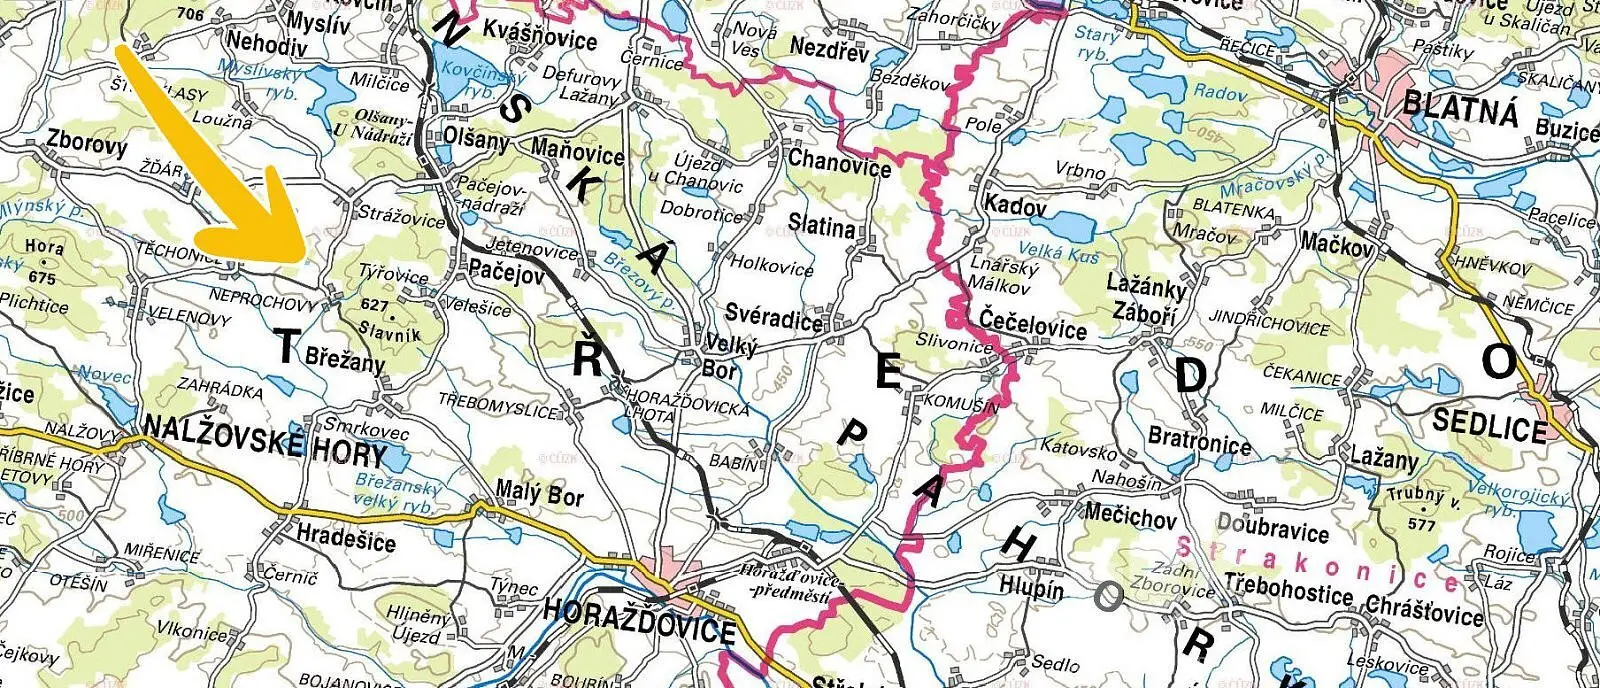 Nalžovské Hory - Neprochovy, okres Klatovy